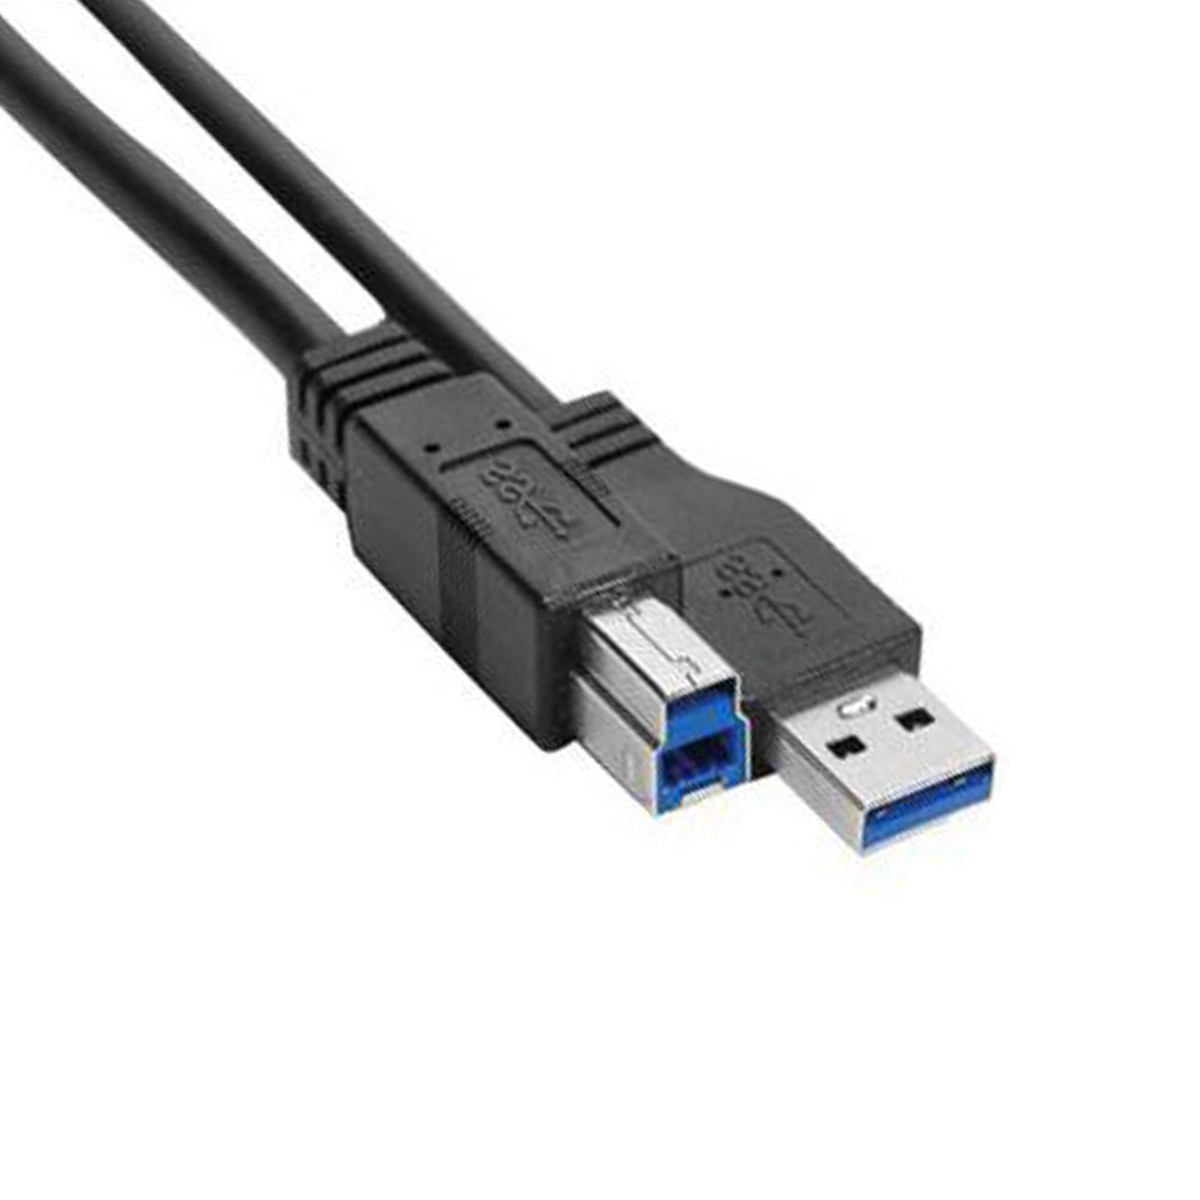 Sans Marque Rallonge USB 5 m - Mâle - Femelle - Haute qualité - Noir - Its  à prix pas cher